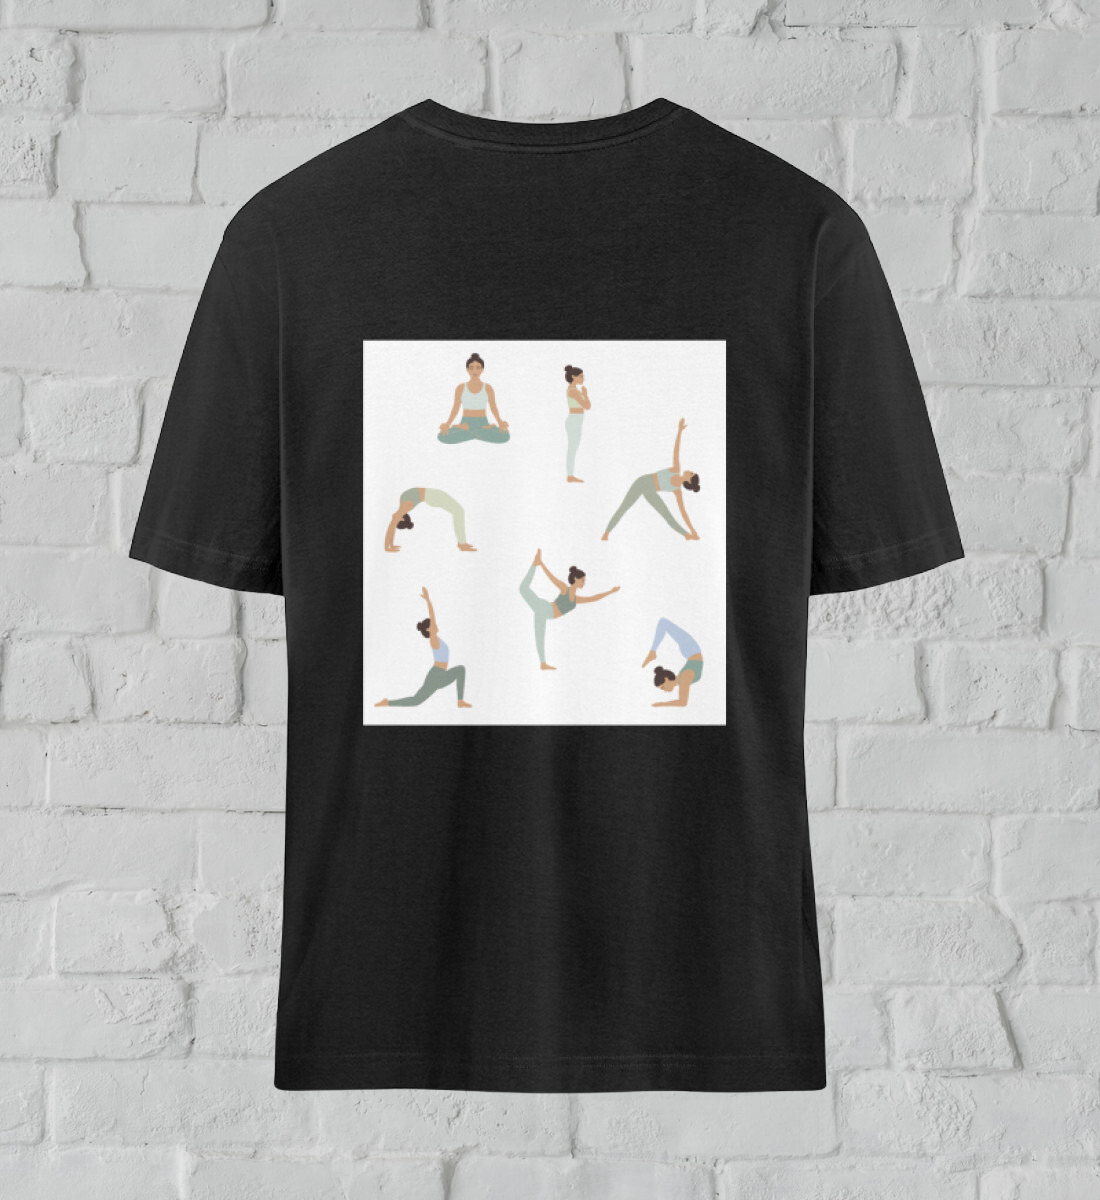 asanas l t-shirt bio-baumwolle schwarz l ausgefallene yoga kleidung l umweltfreundliche mode aus natürlichen materialien